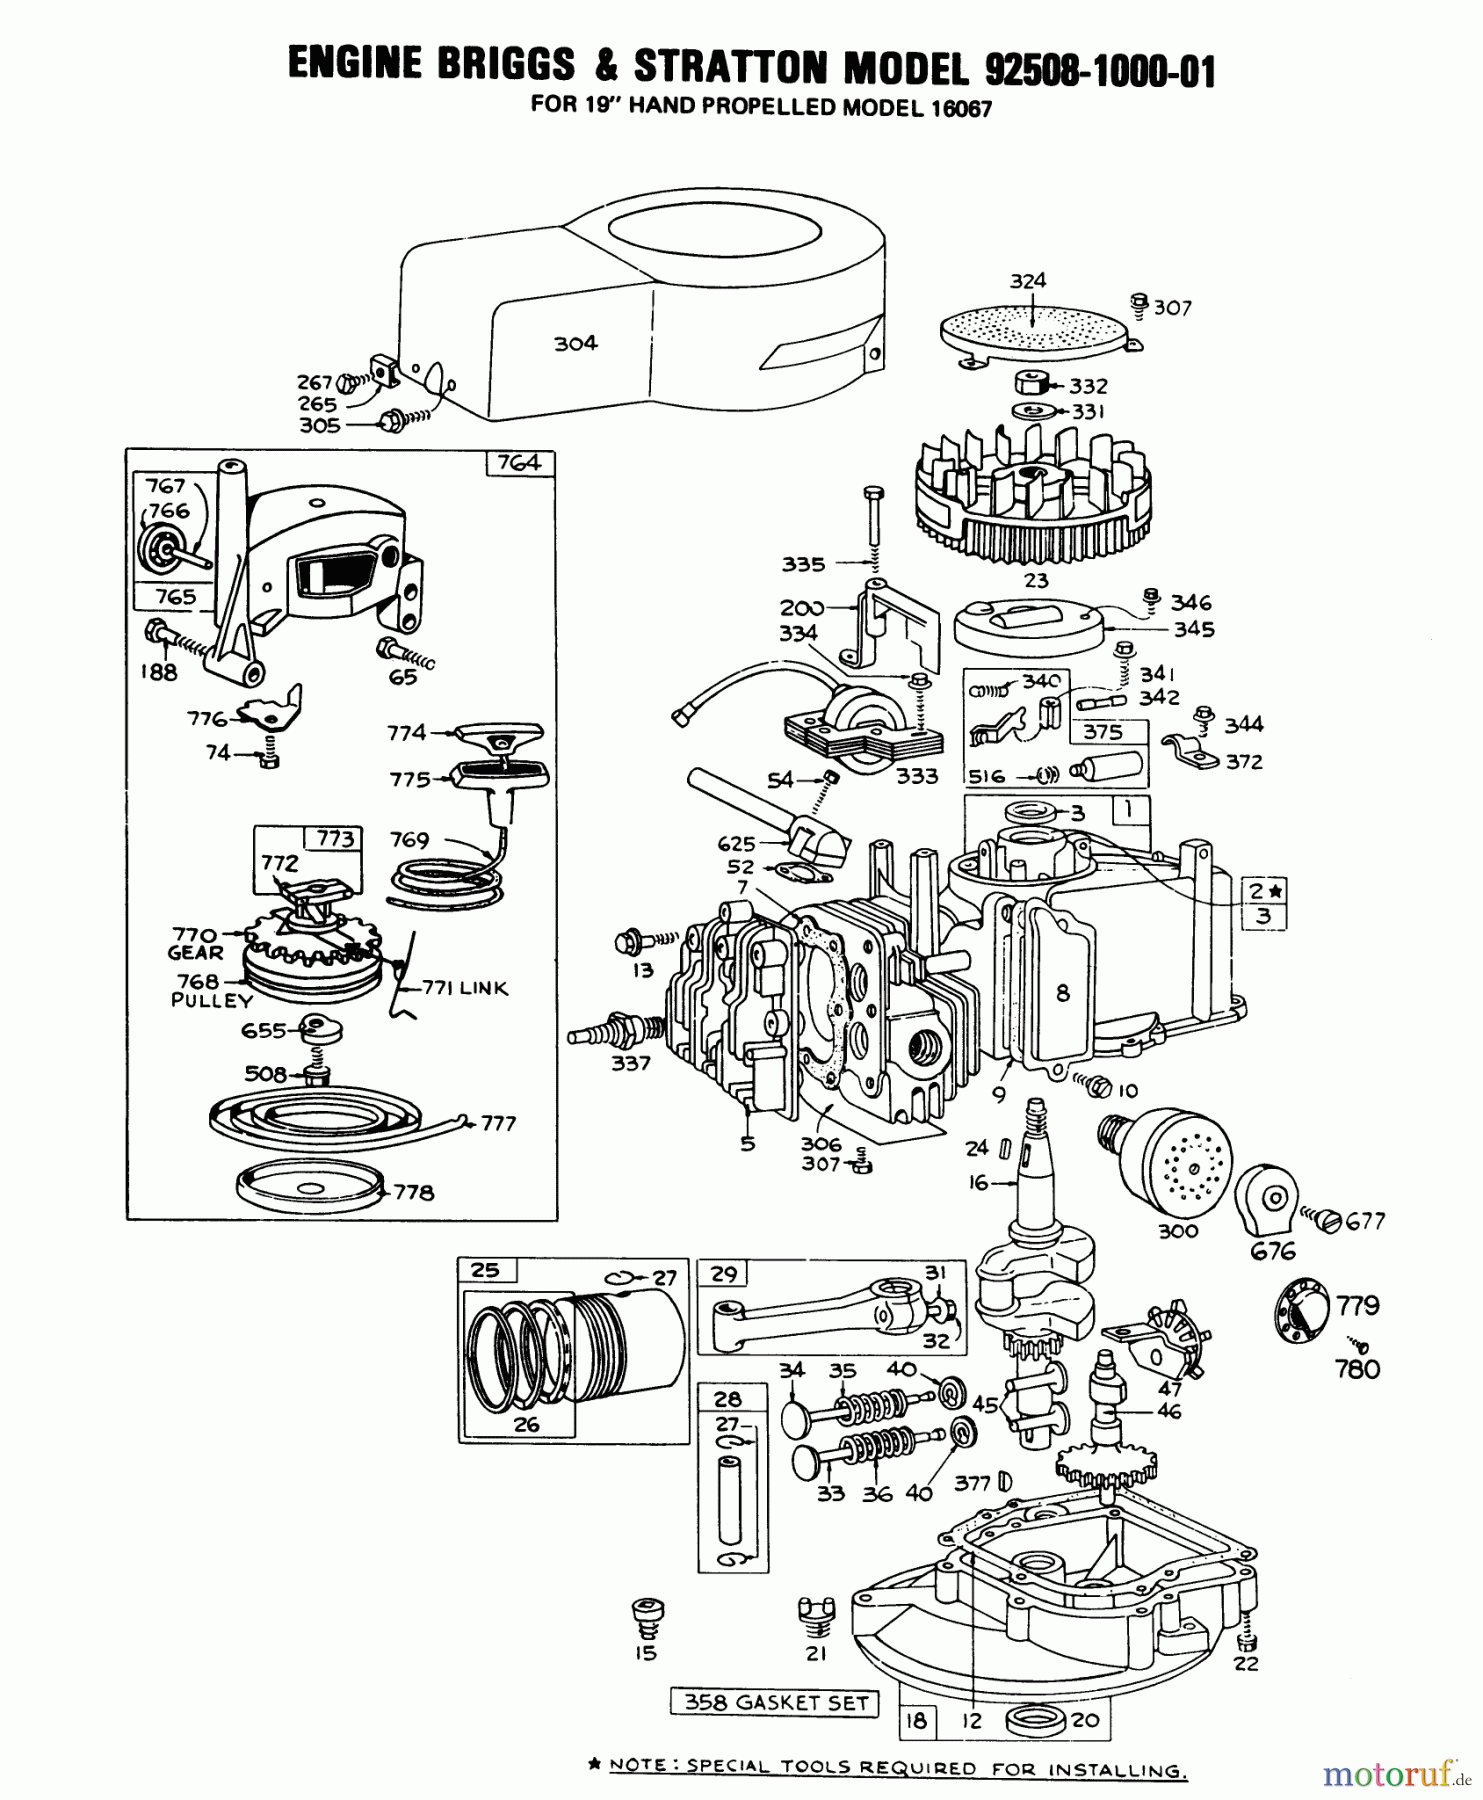  Toro Neu Mowers, Walk-Behind Seite 1 16067 - Toro Whirlwind II Lawnmower, 1978 (8000001-8999999) ENGINE BRIGGS & STRATTON MODEL 92508-1000-01 FOR 19